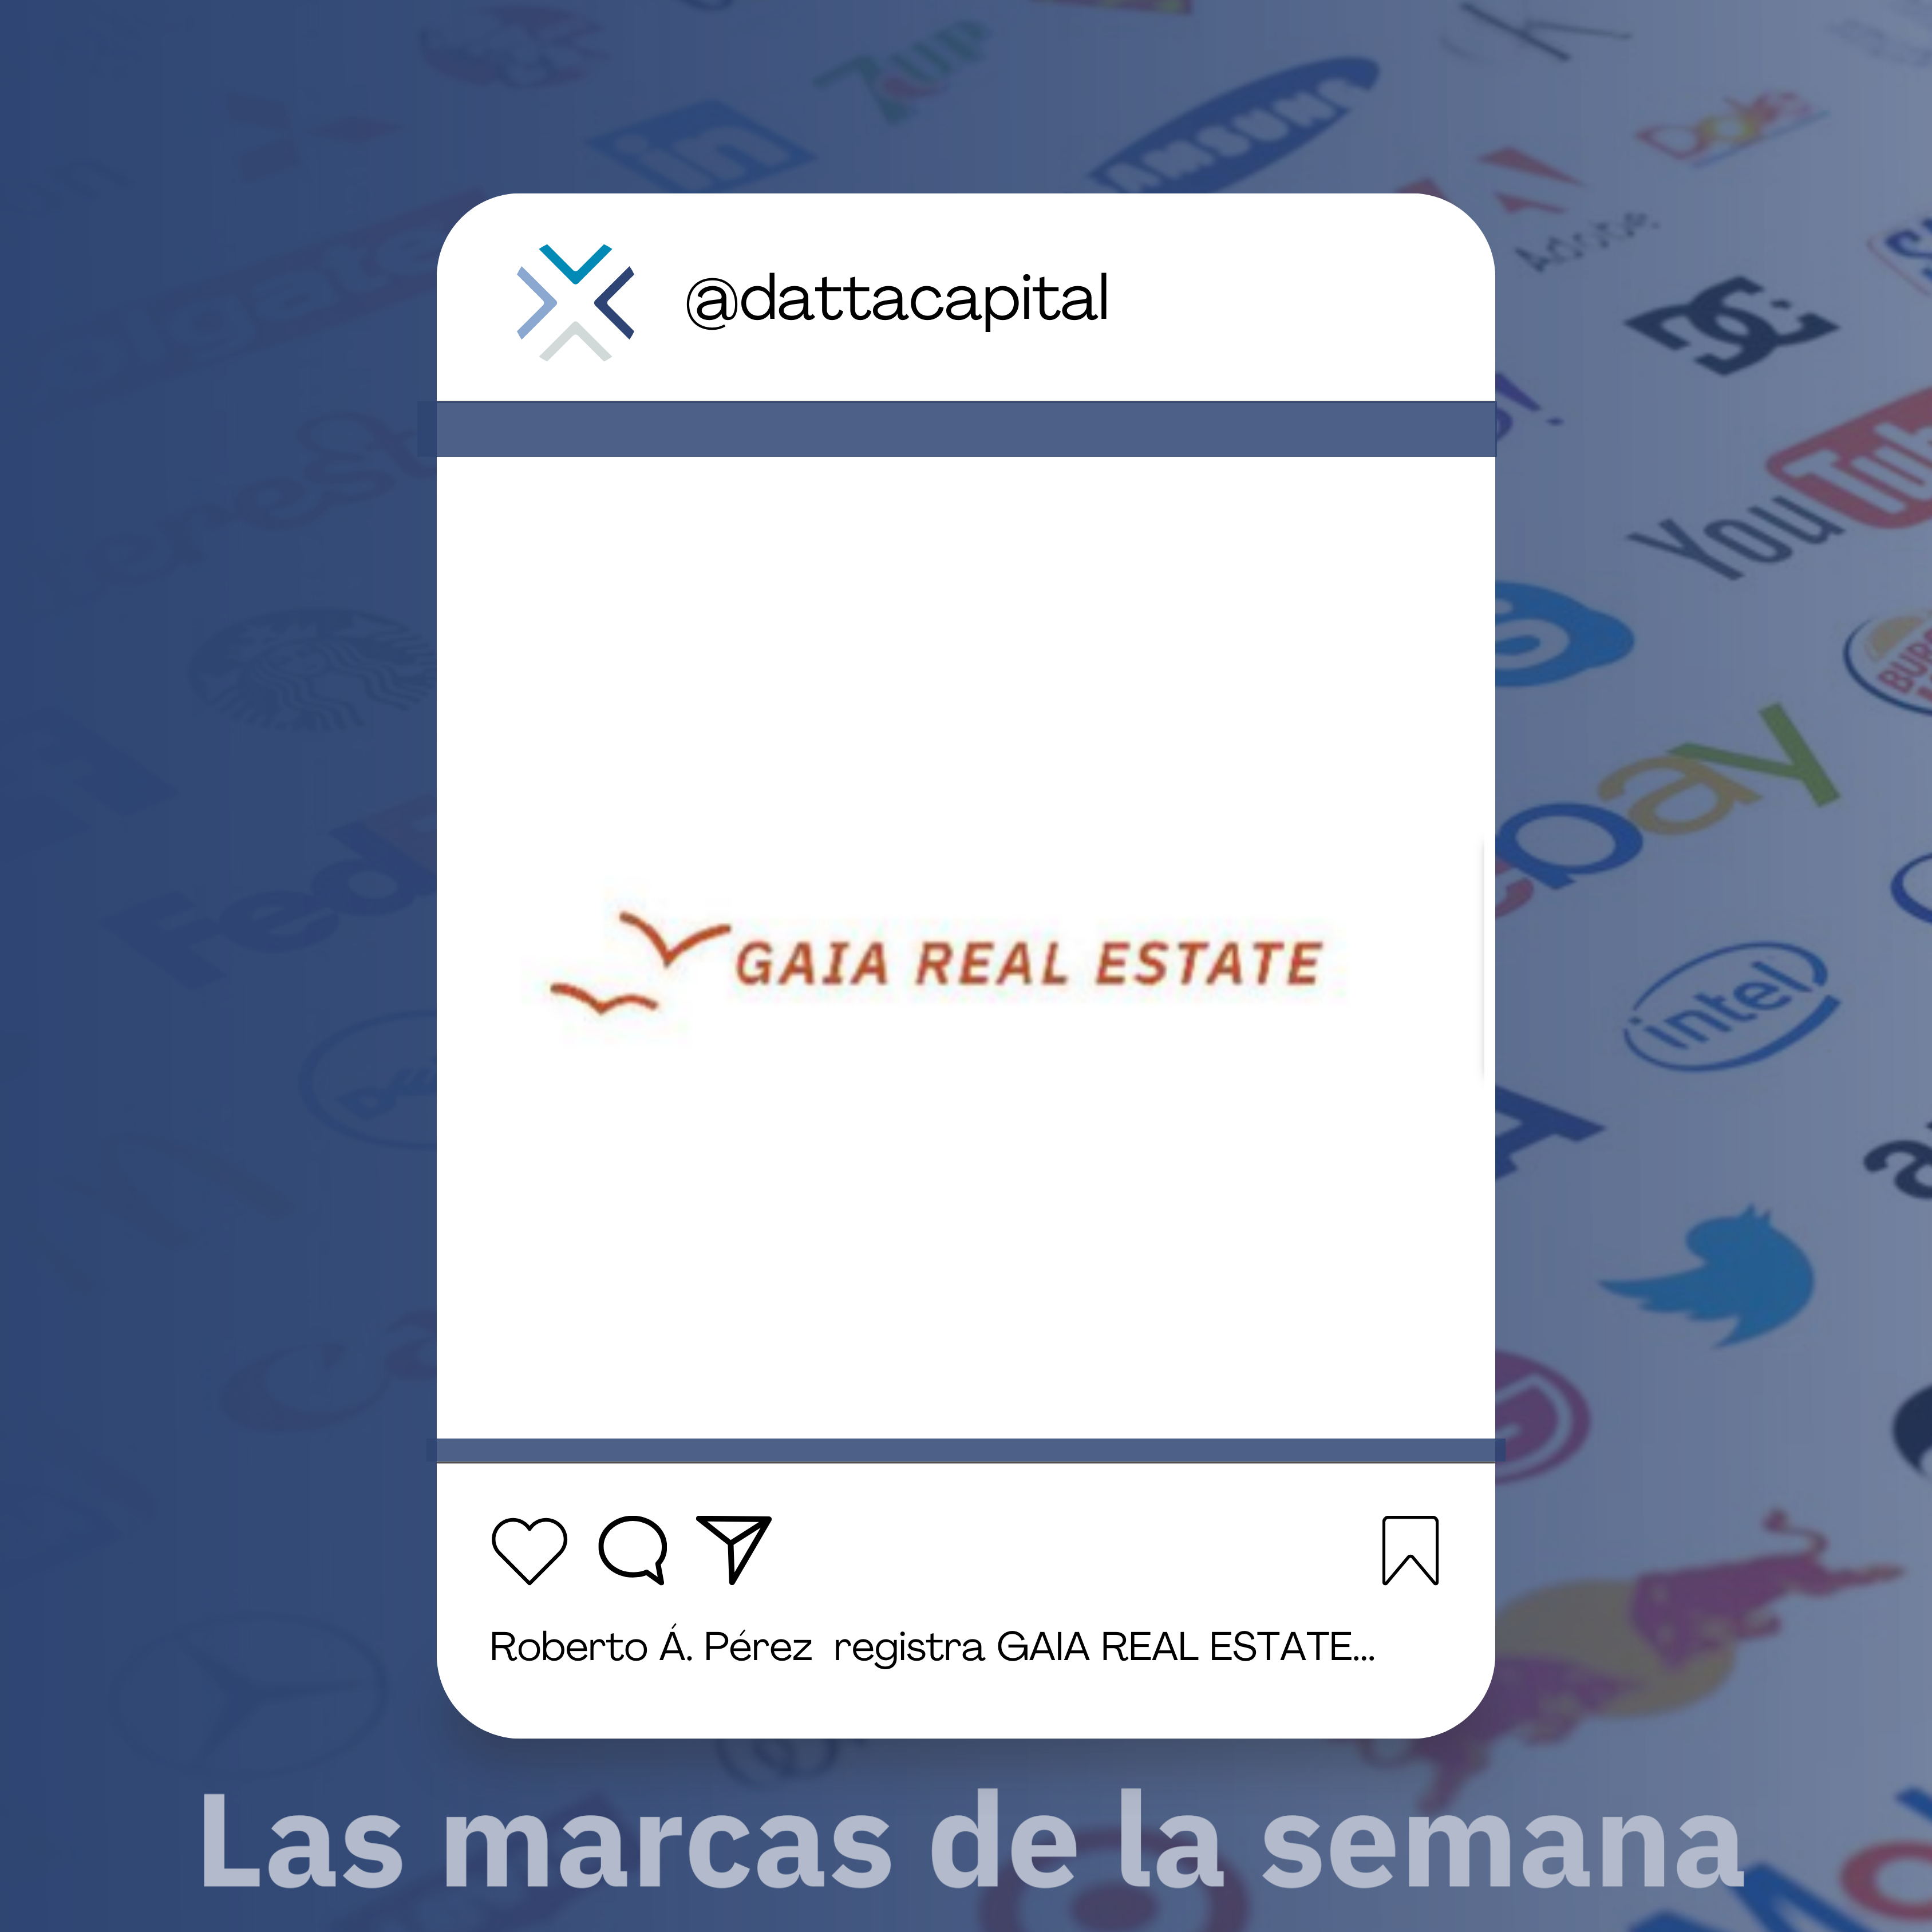 Roberto Ángel Pérez Cobacho registra GAIA REAL ESTATE una nueva marca en el sector inmobiliario